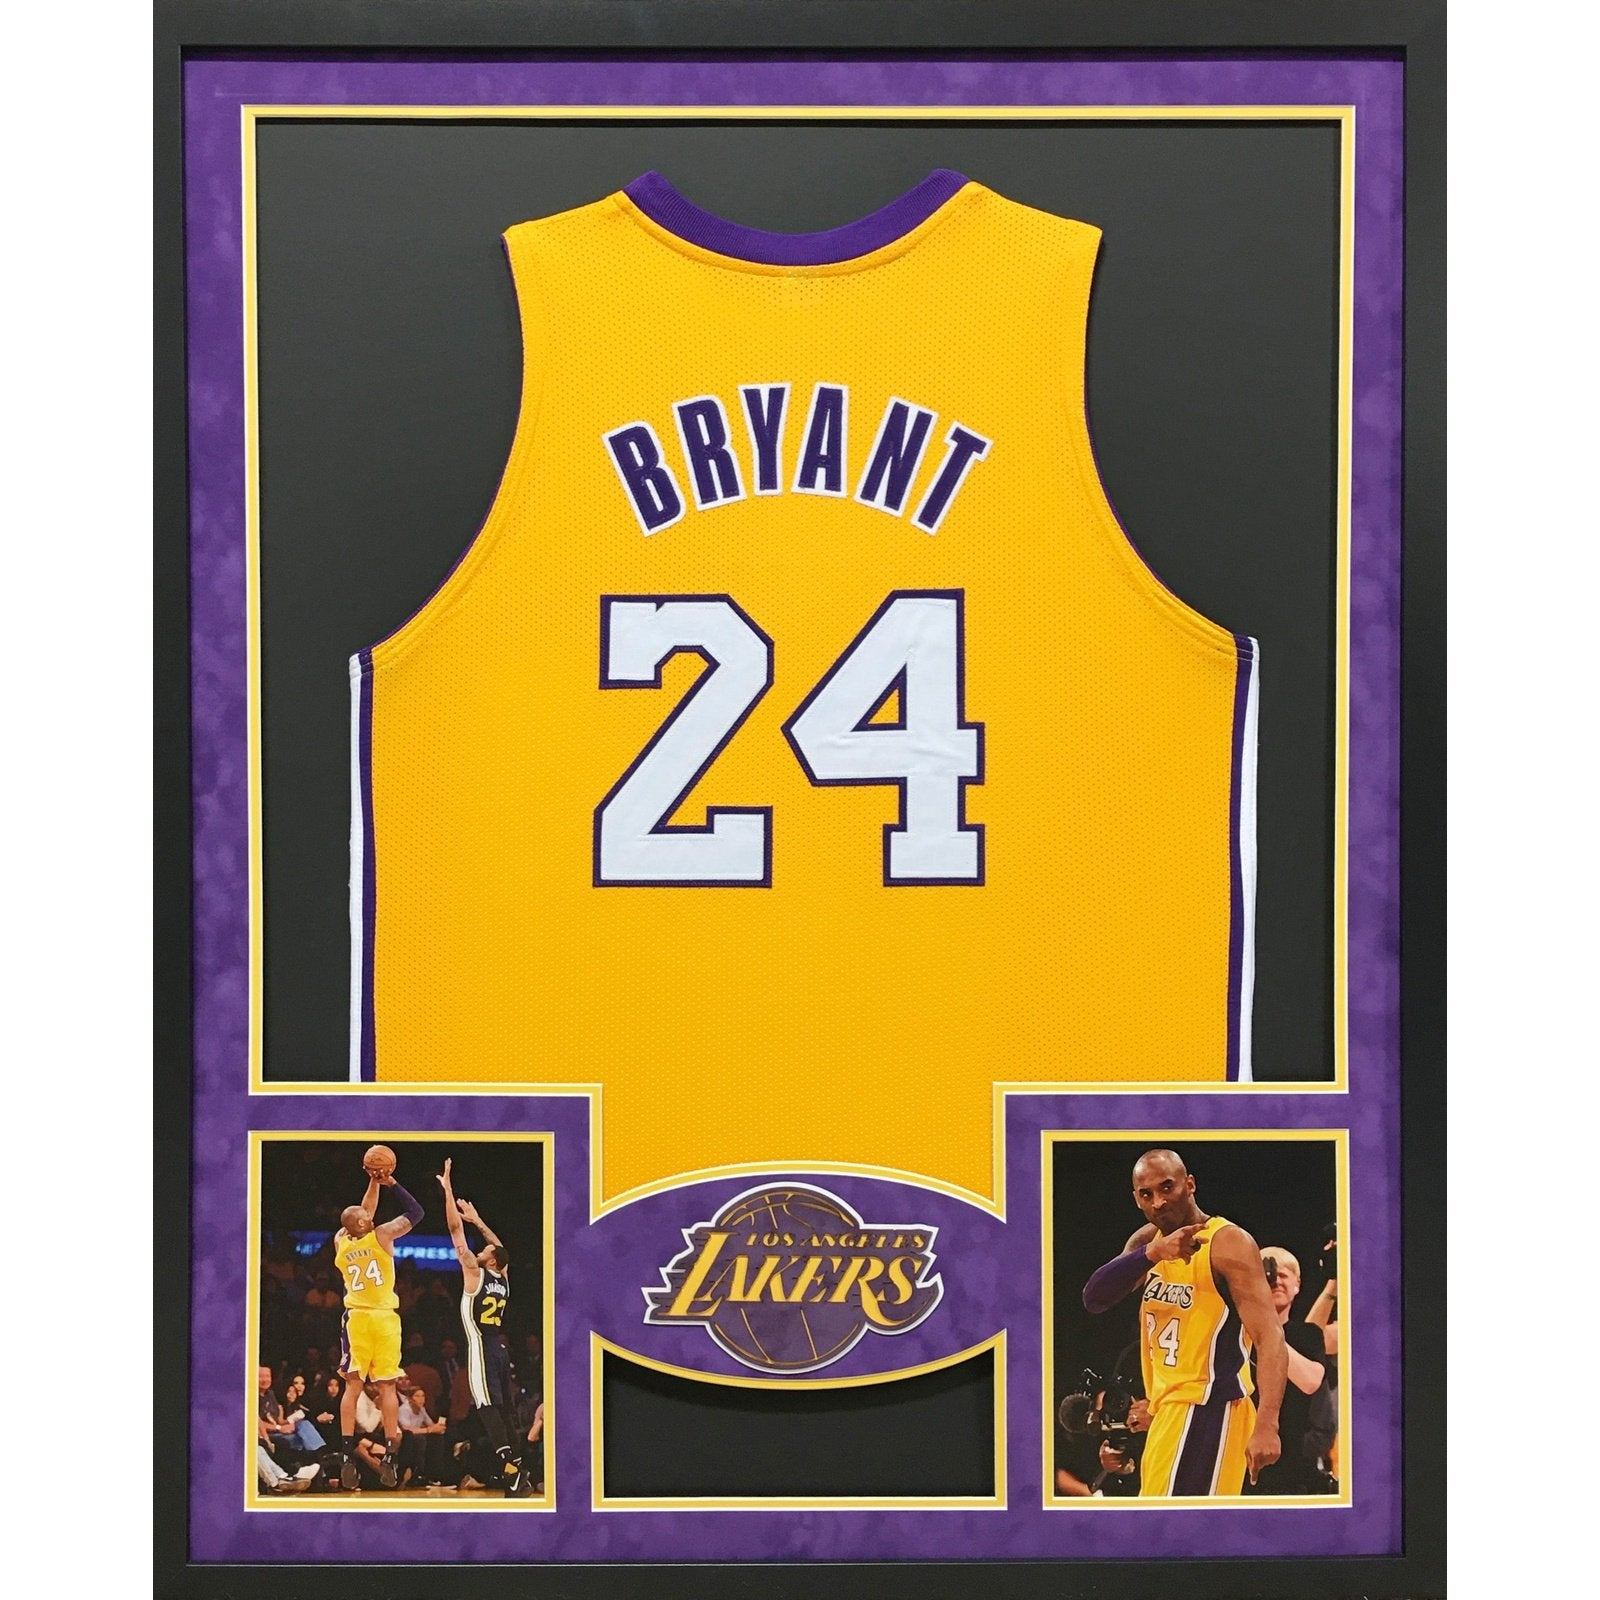 Kobe Bryant Jerseys, Kobe Bryant Shirt, Kobe Bryant Gear & Merchandise